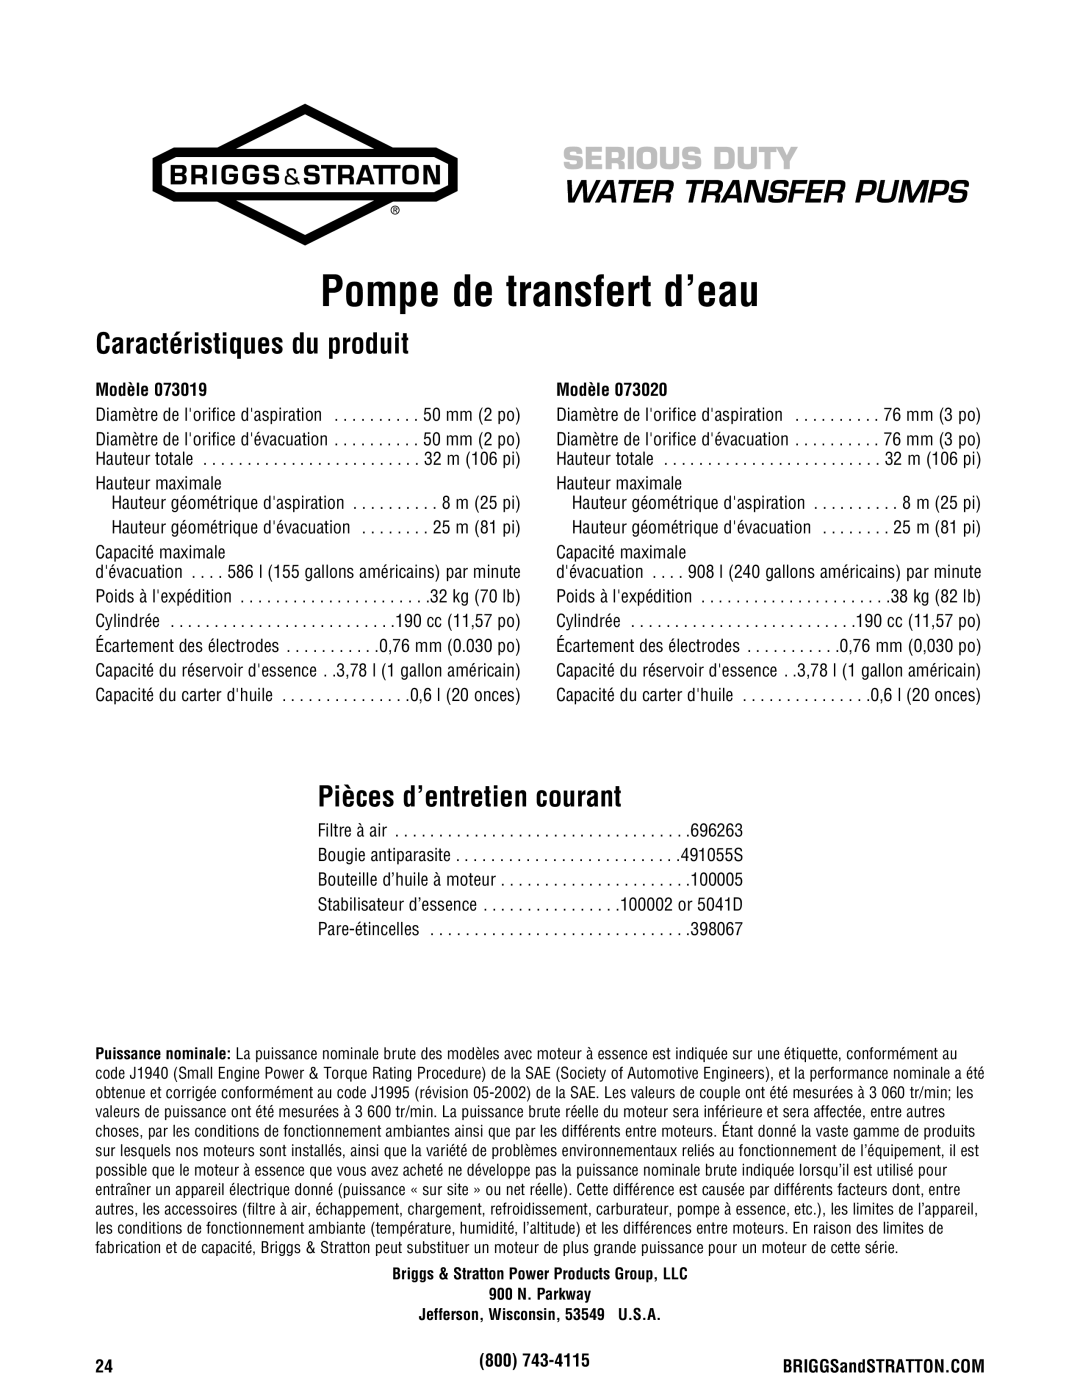 Briggs & Stratton Water Transfer Pump manual Caractéristiques du produit, Pièces d’entretien courant, Modèle 